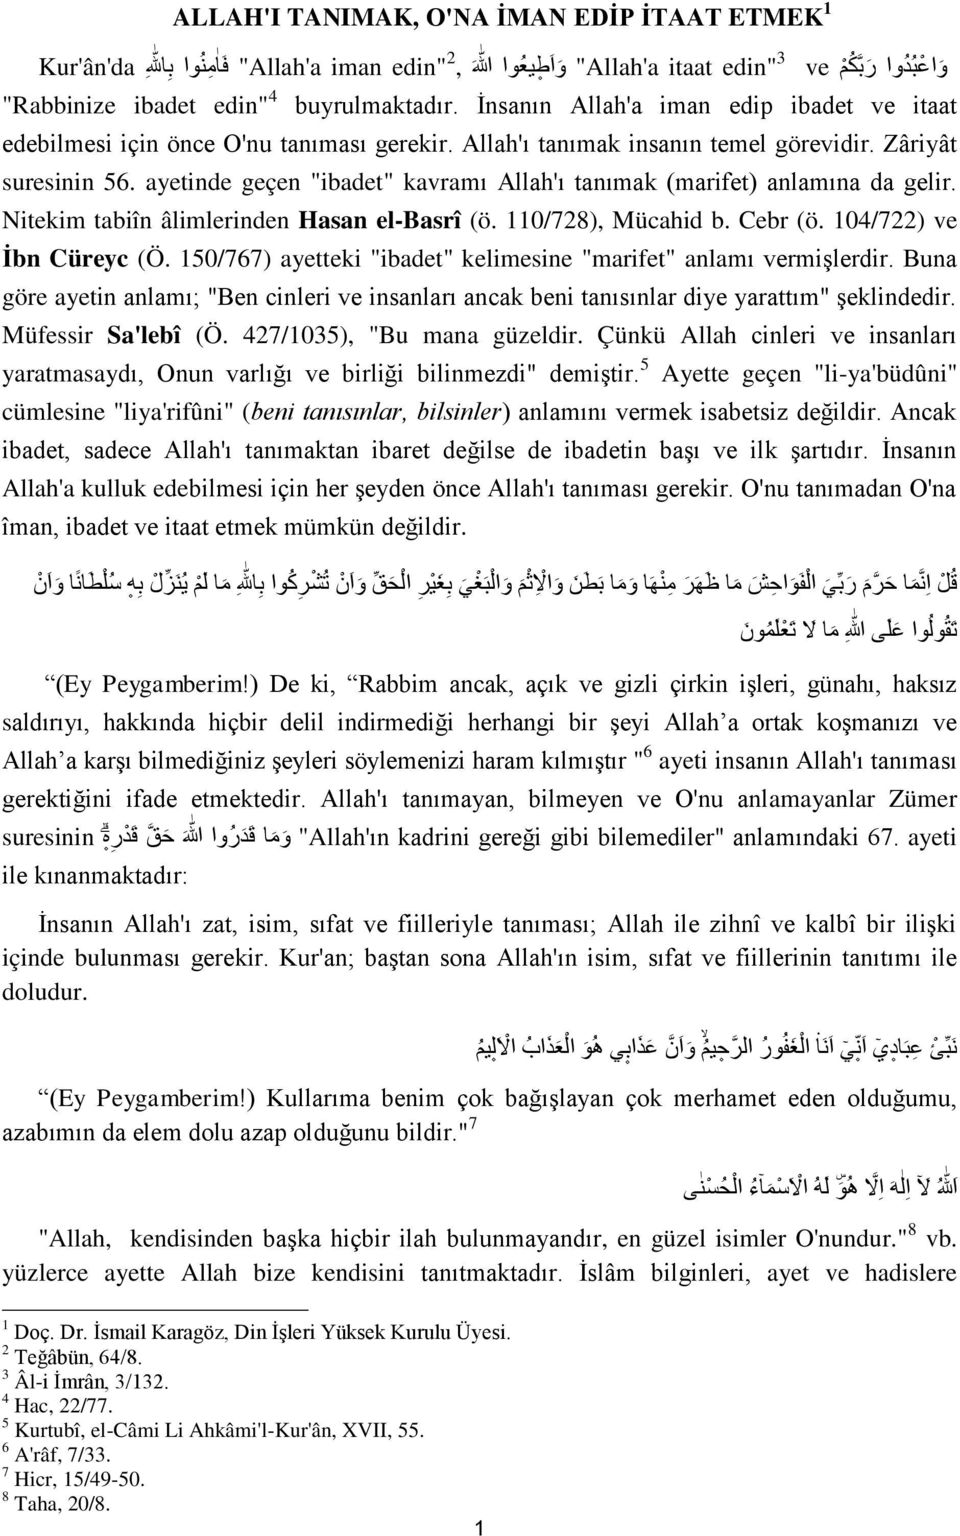 ayetinde geçen "ibadet" kavramı Allah'ı tanımak (marifet) anlamına da gelir. Nitekim tabiîn âlimlerinden Hasan el-basrî (ö. 110/728), Mücahid b. Cebr (ö. 104/722) ve İbn Cüreyc (Ö.